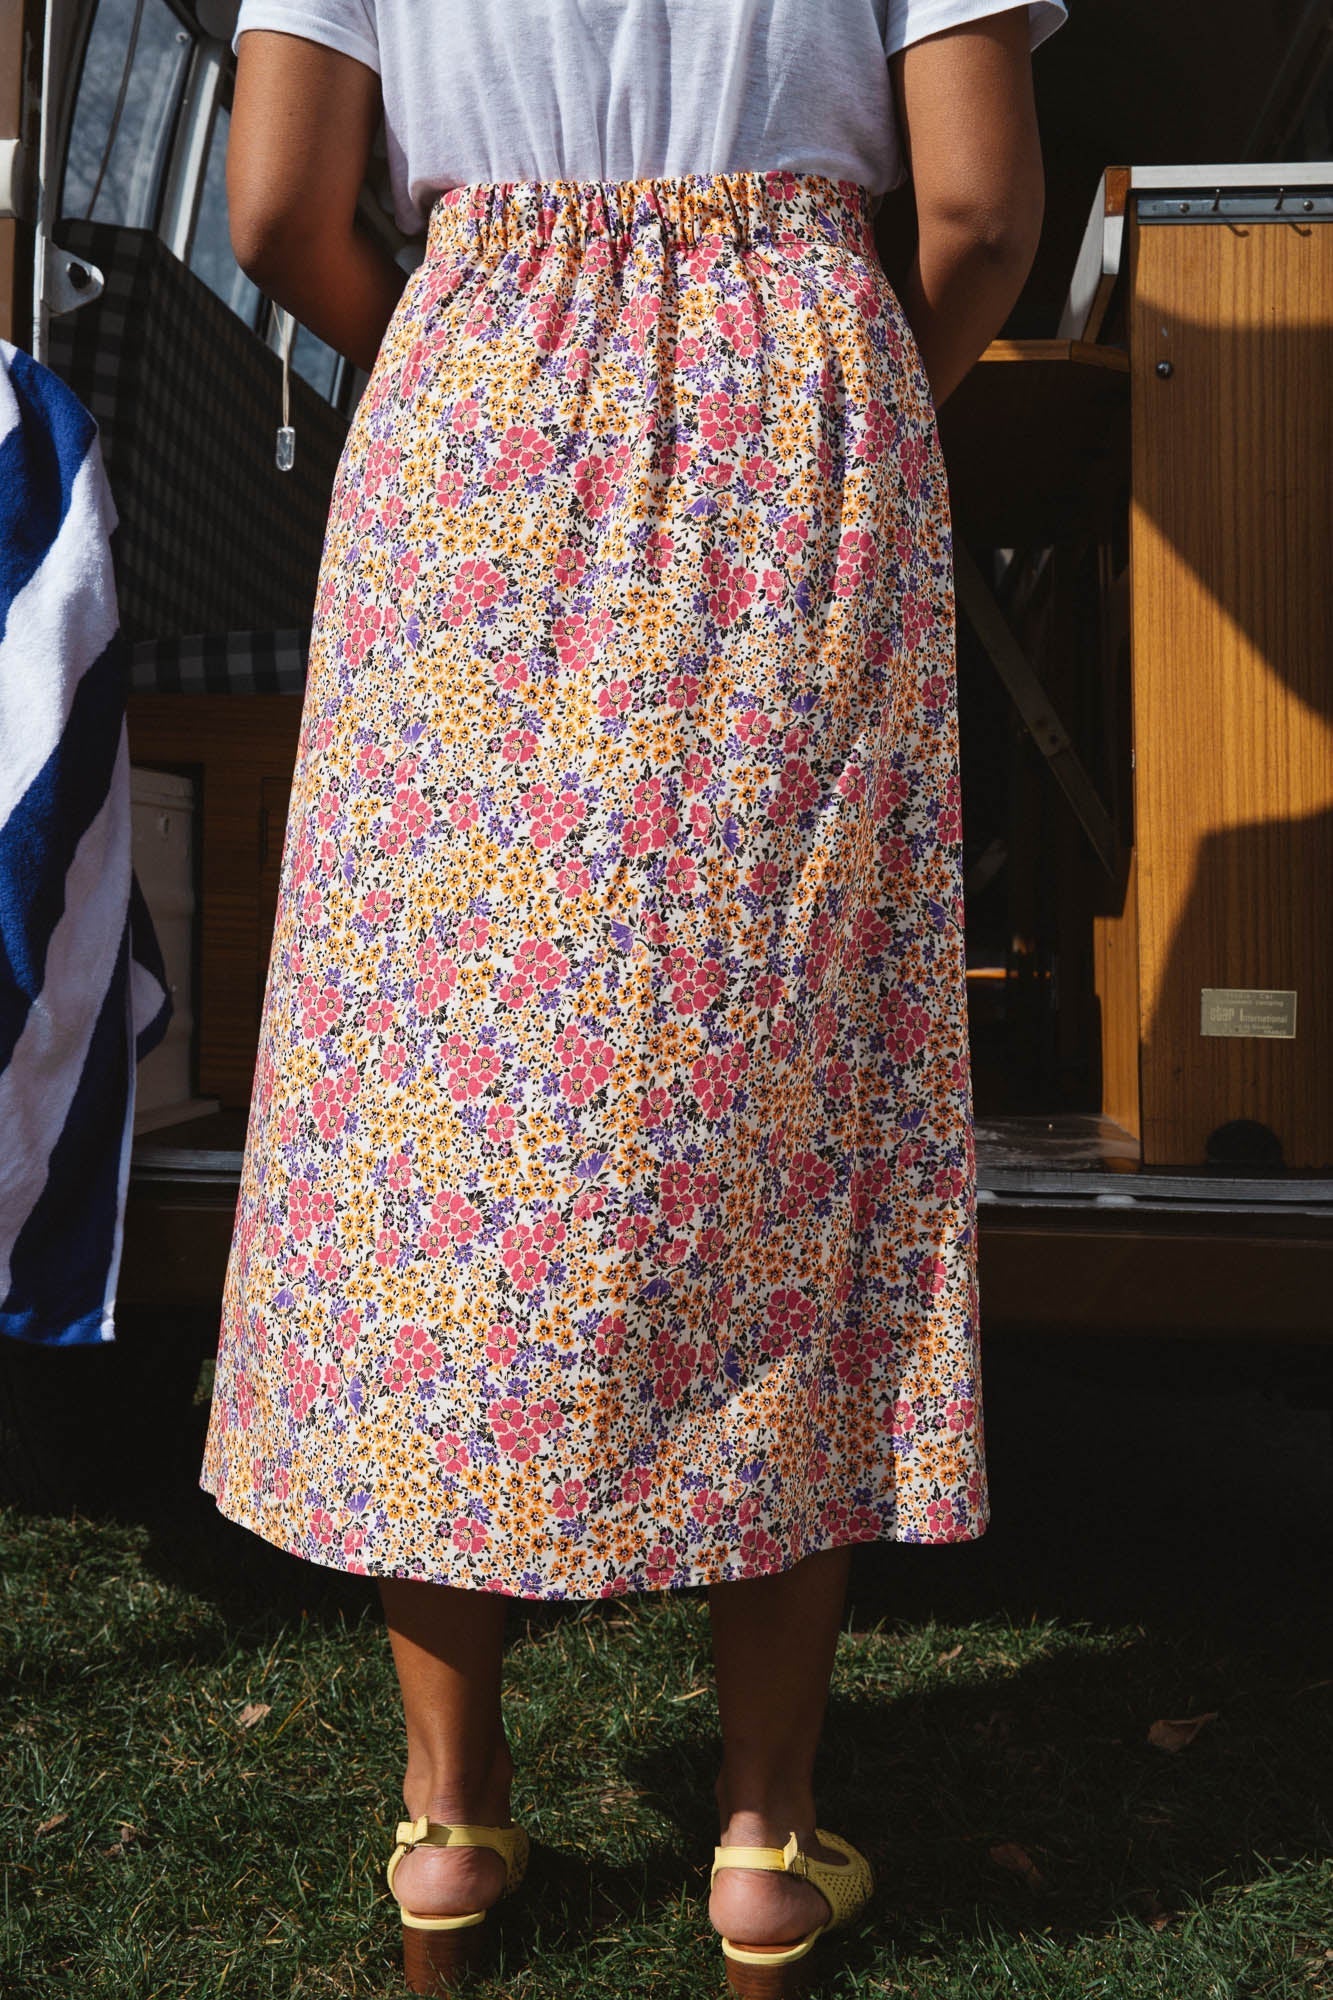 Sally skirt with solar flower print